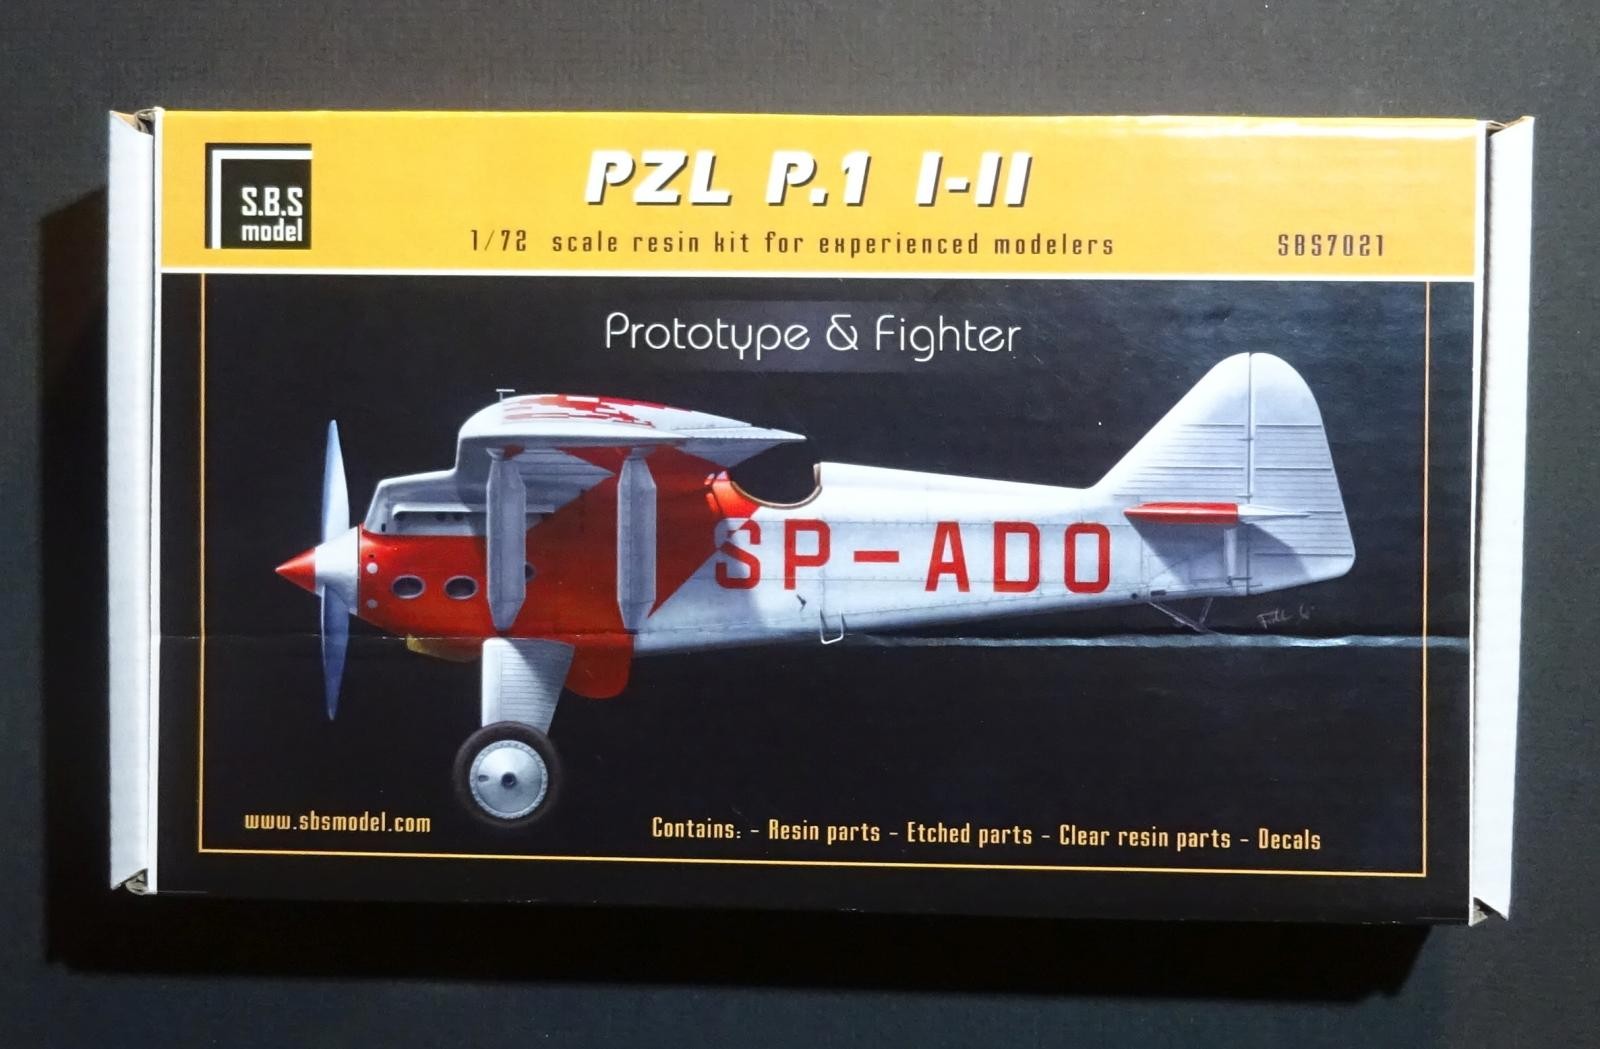 Techmod Decals 1/48 Polish PZL P-11c Fighter